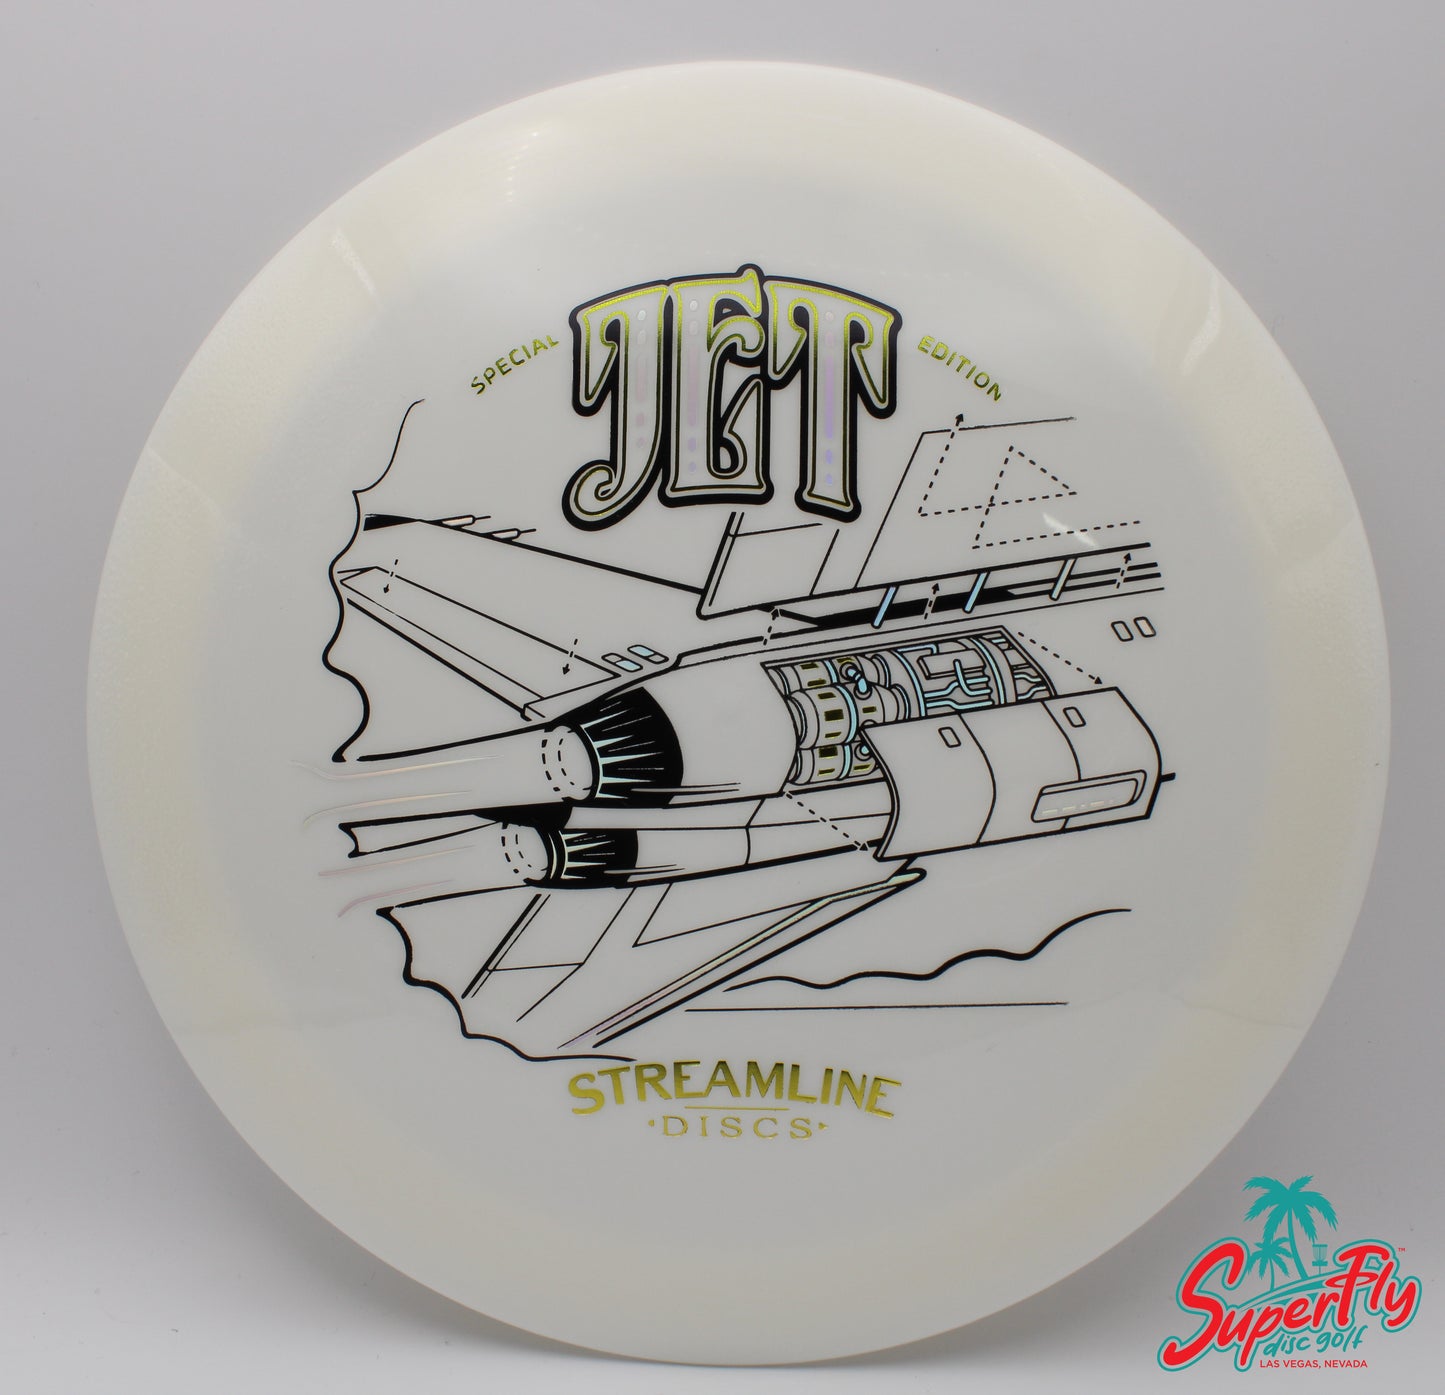 Streamline Discs Special Edition Neutron Jet